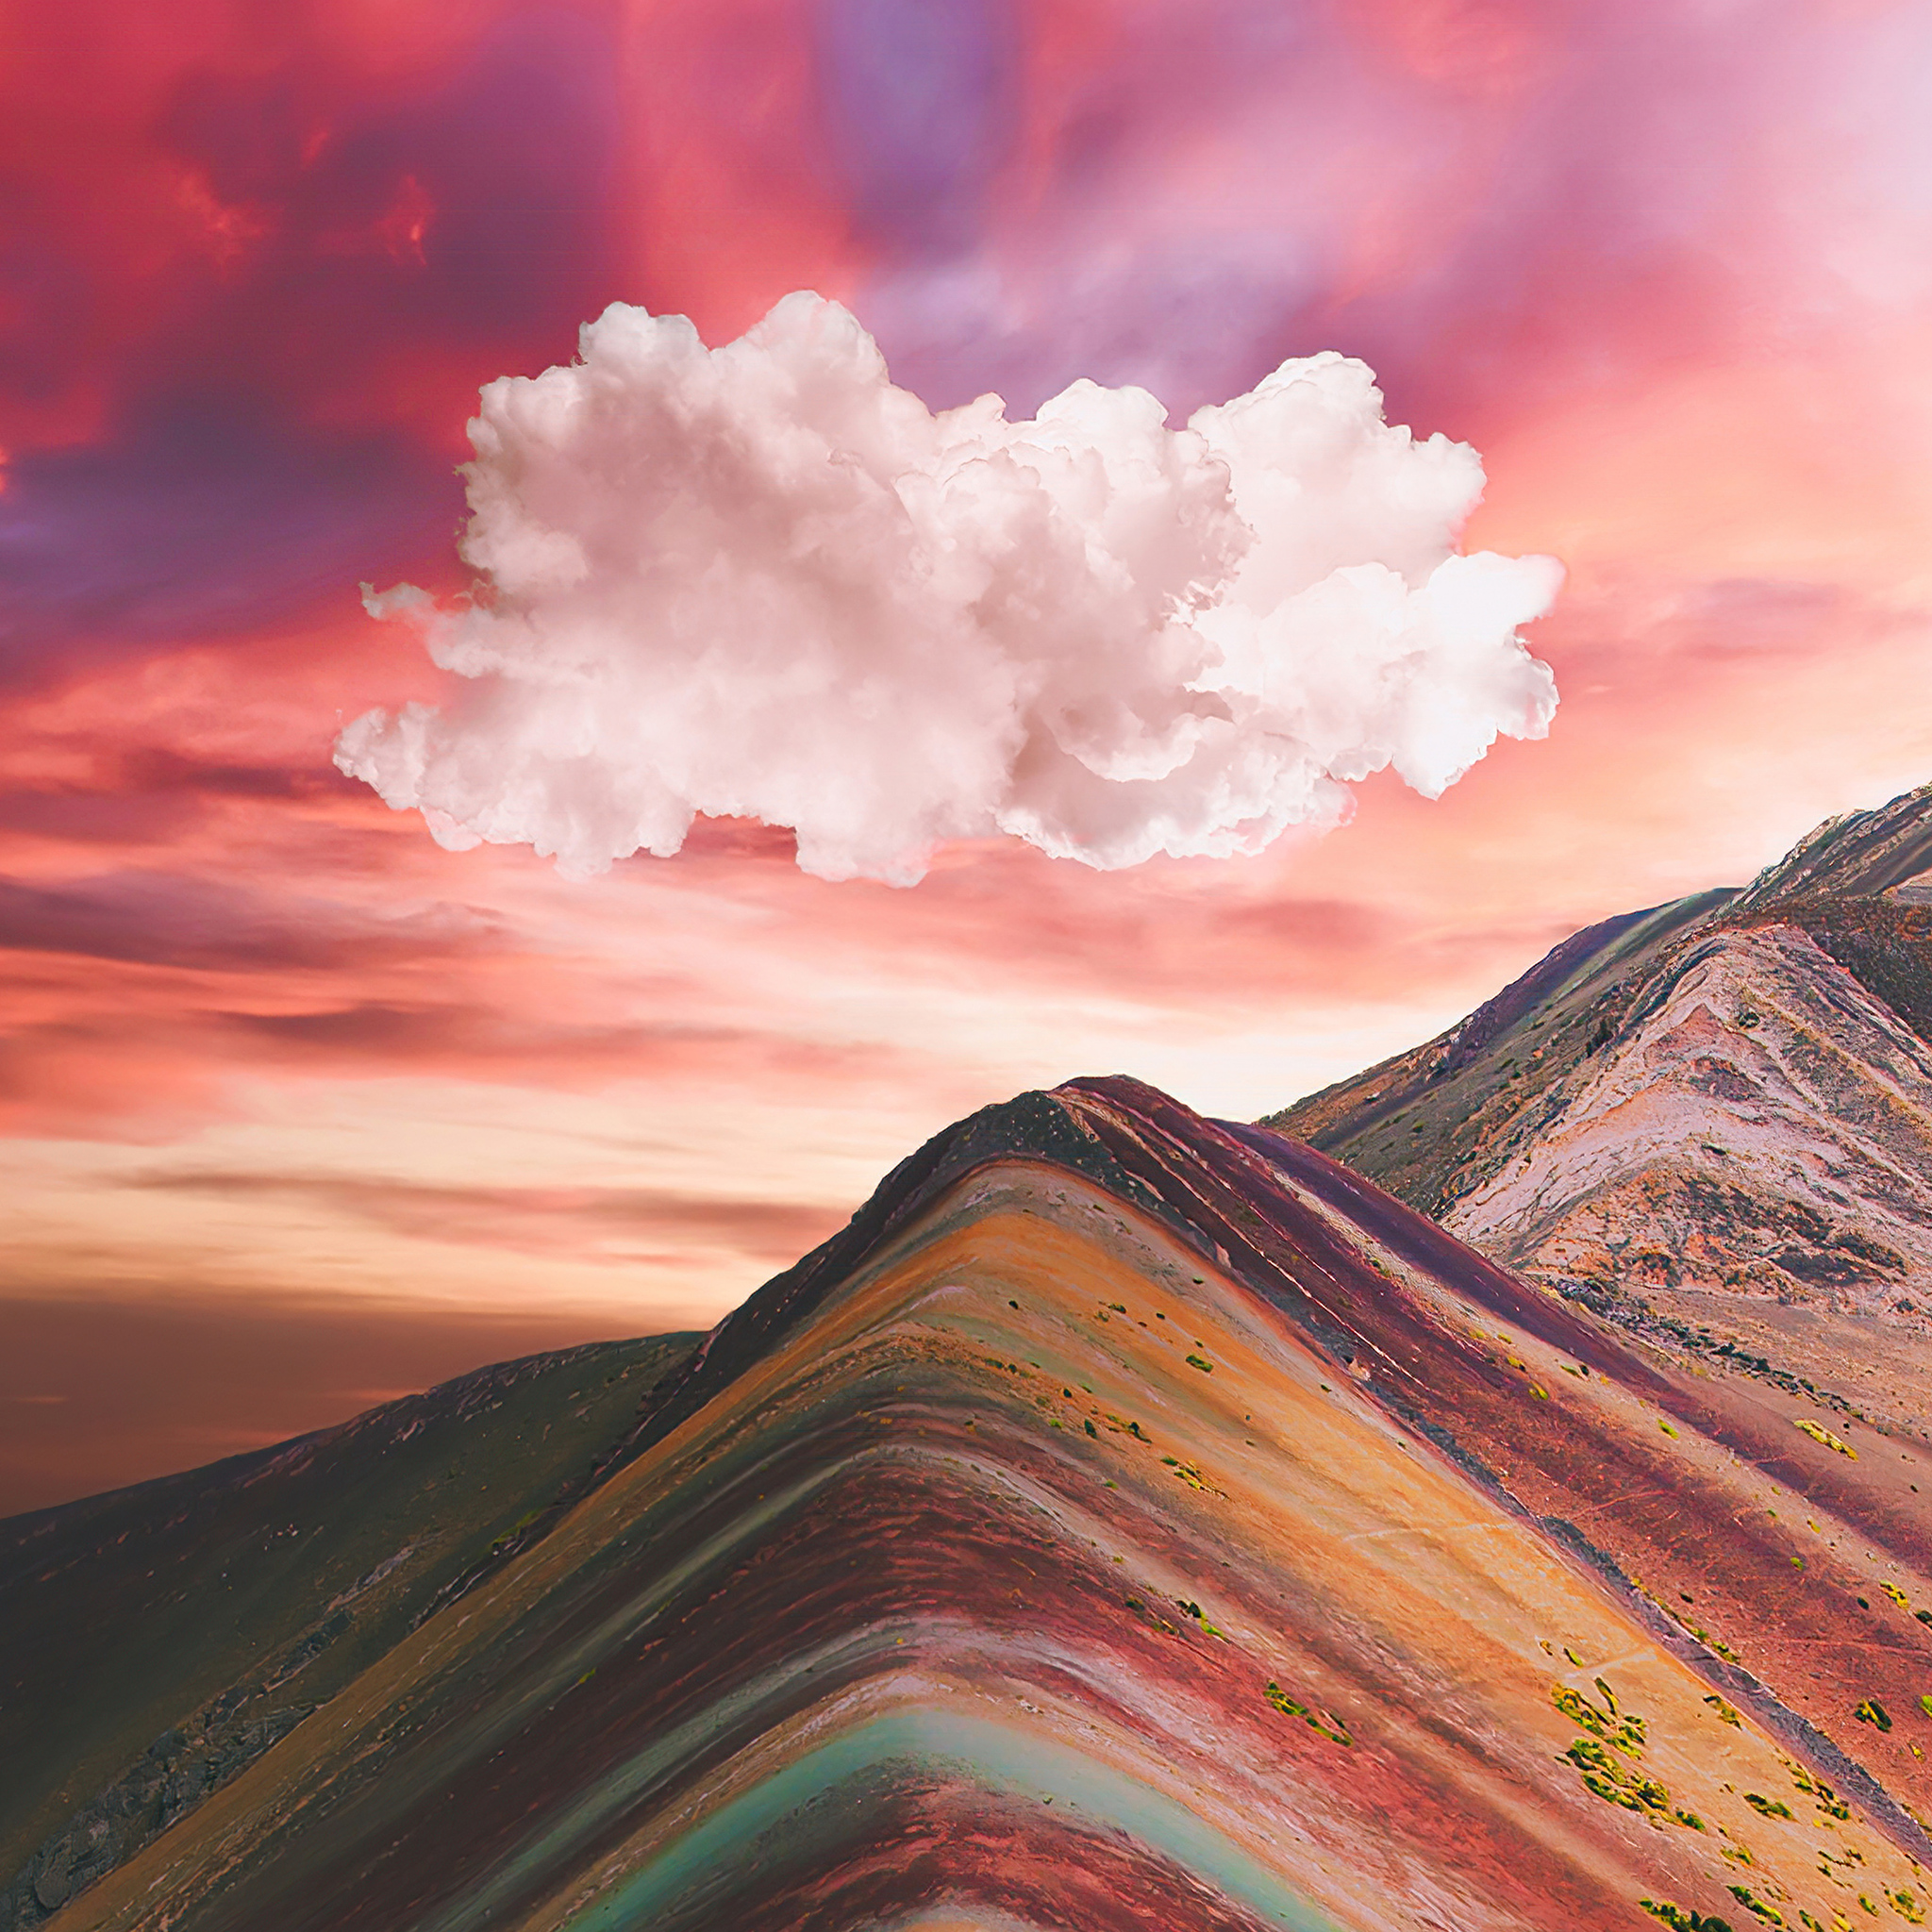 Với kích thước 2048x2048, bức ảnh về đường mây phủ kín núi Rainbow Vinicunca 4k hiển thị đẹp mắt trên iPad air sẽ khiến bạn cảm thấy như đang lạc vào một khung cảnh thiên nhiên hùng việt, hoang sơ và tràn đầy sức sống.